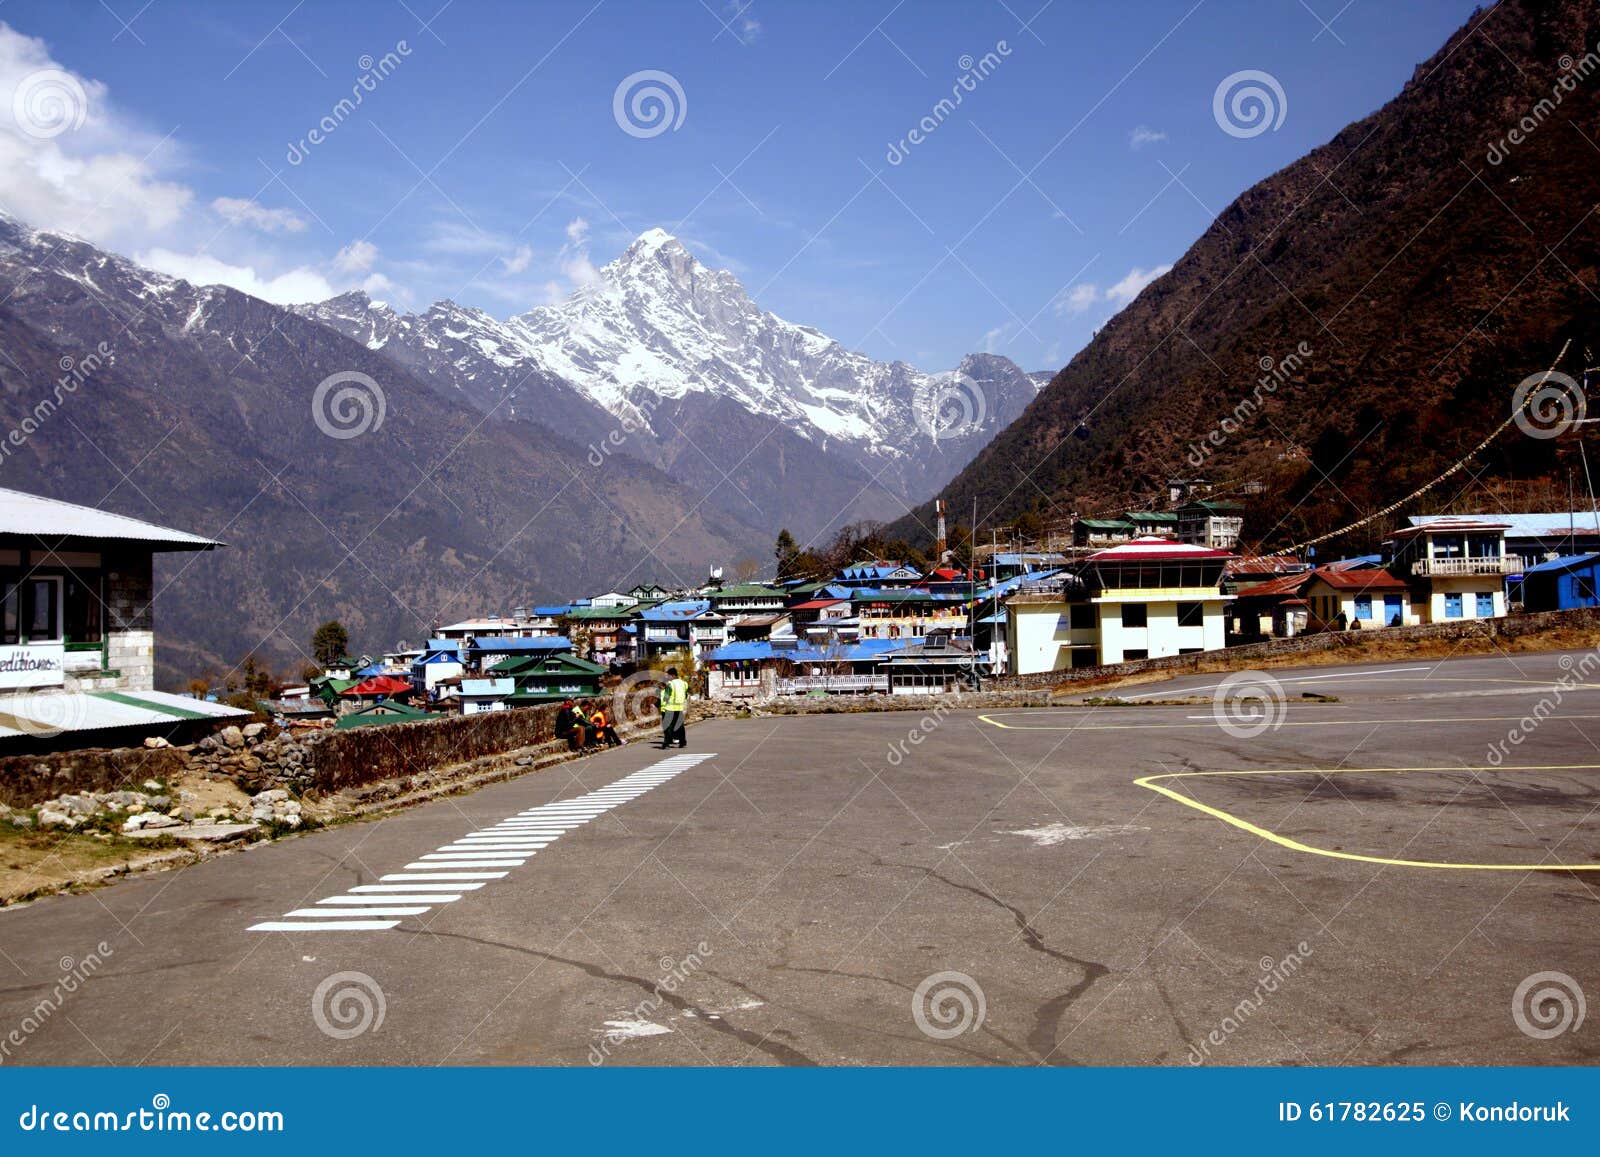 lukla, nepal: view of kongde ri peak 6,187m